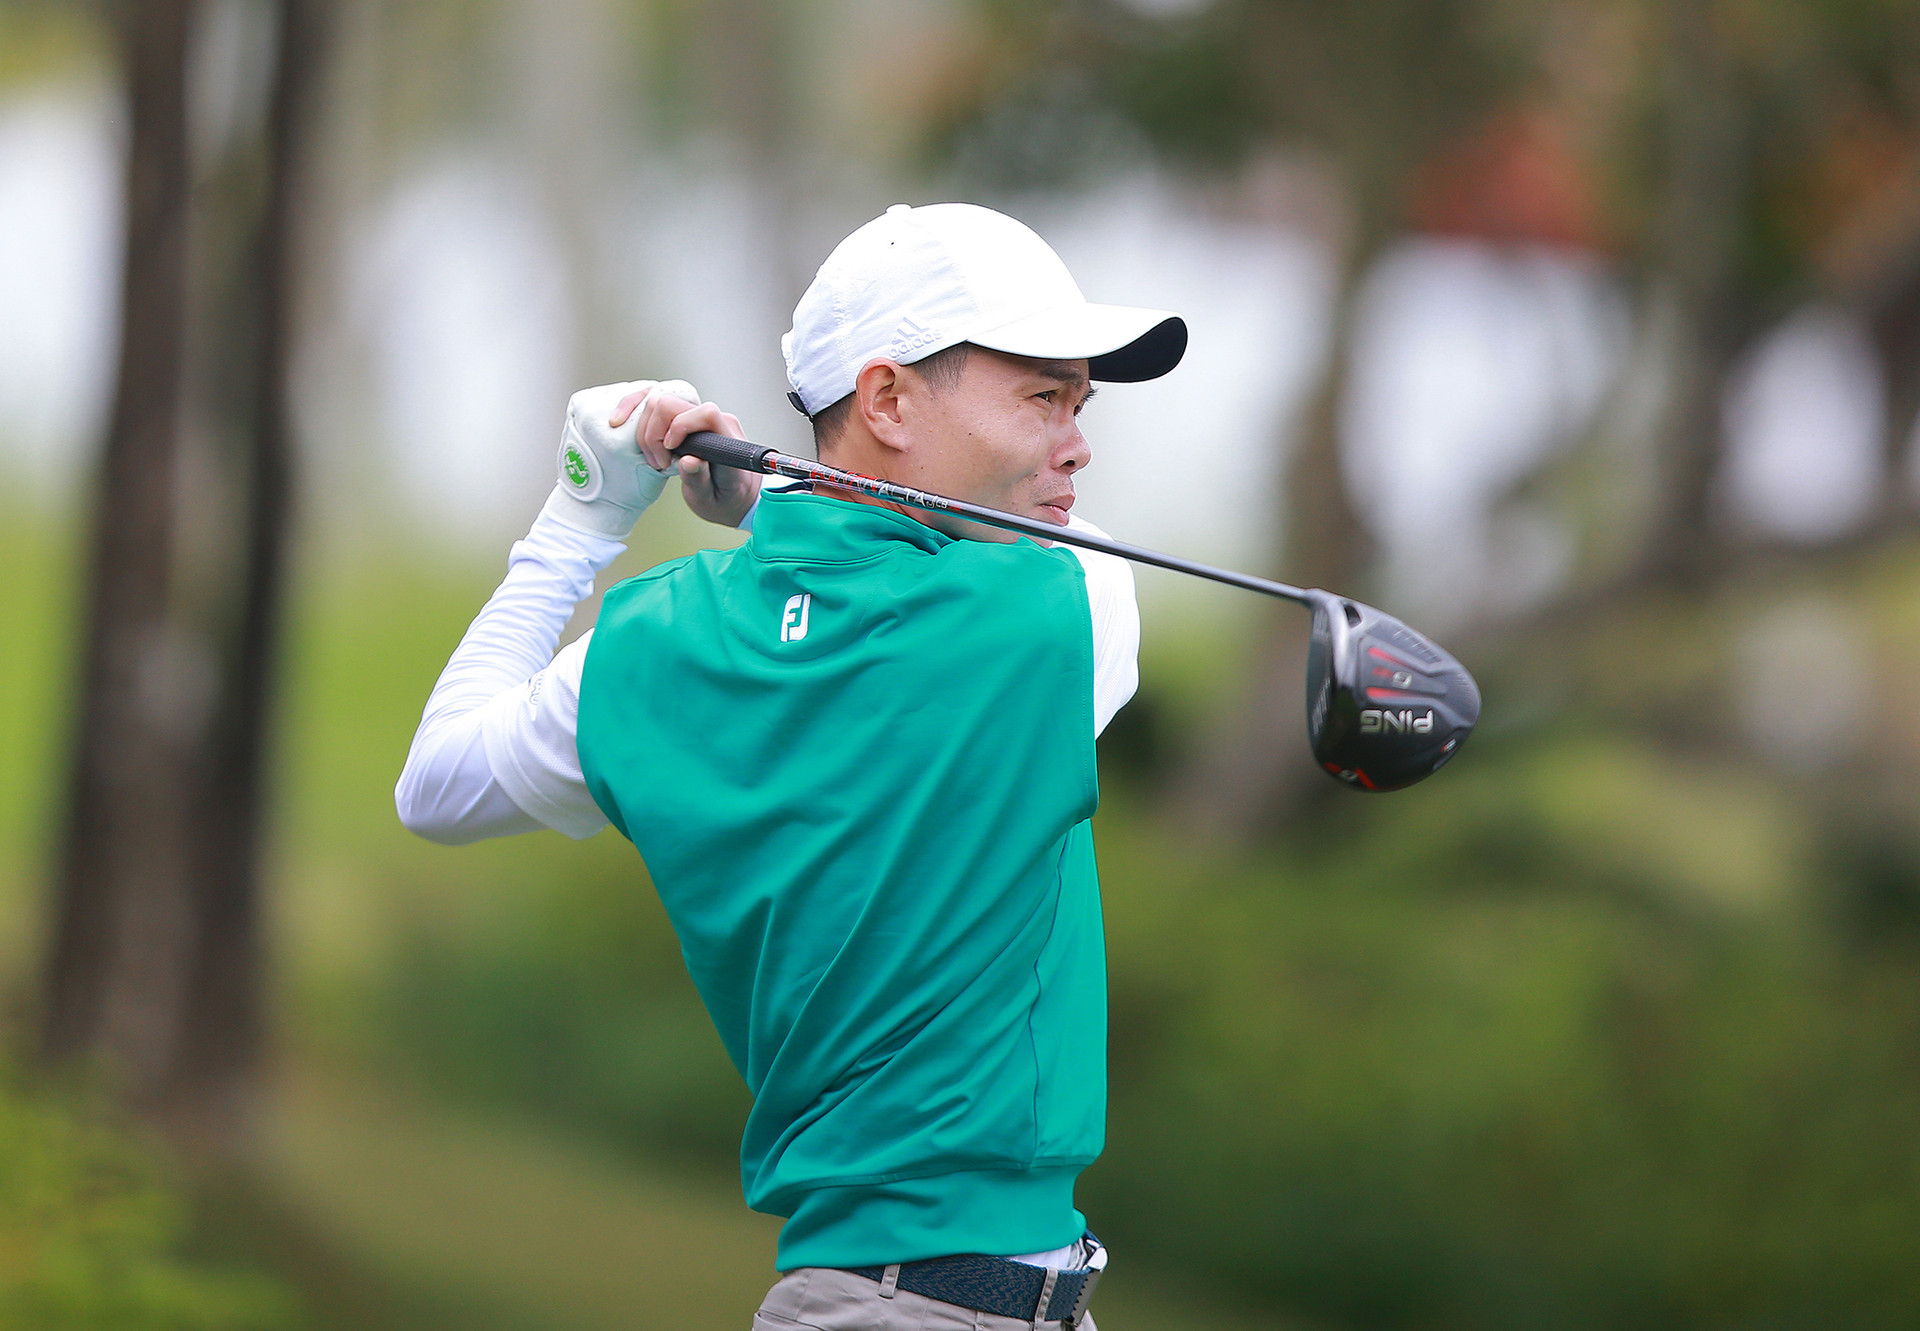 Đánh -10 gậy, golfer Tạ Quang Cường trở thành nhà vô địch năm 2020 của CLB Golf Đinh Mão - Ảnh 2.